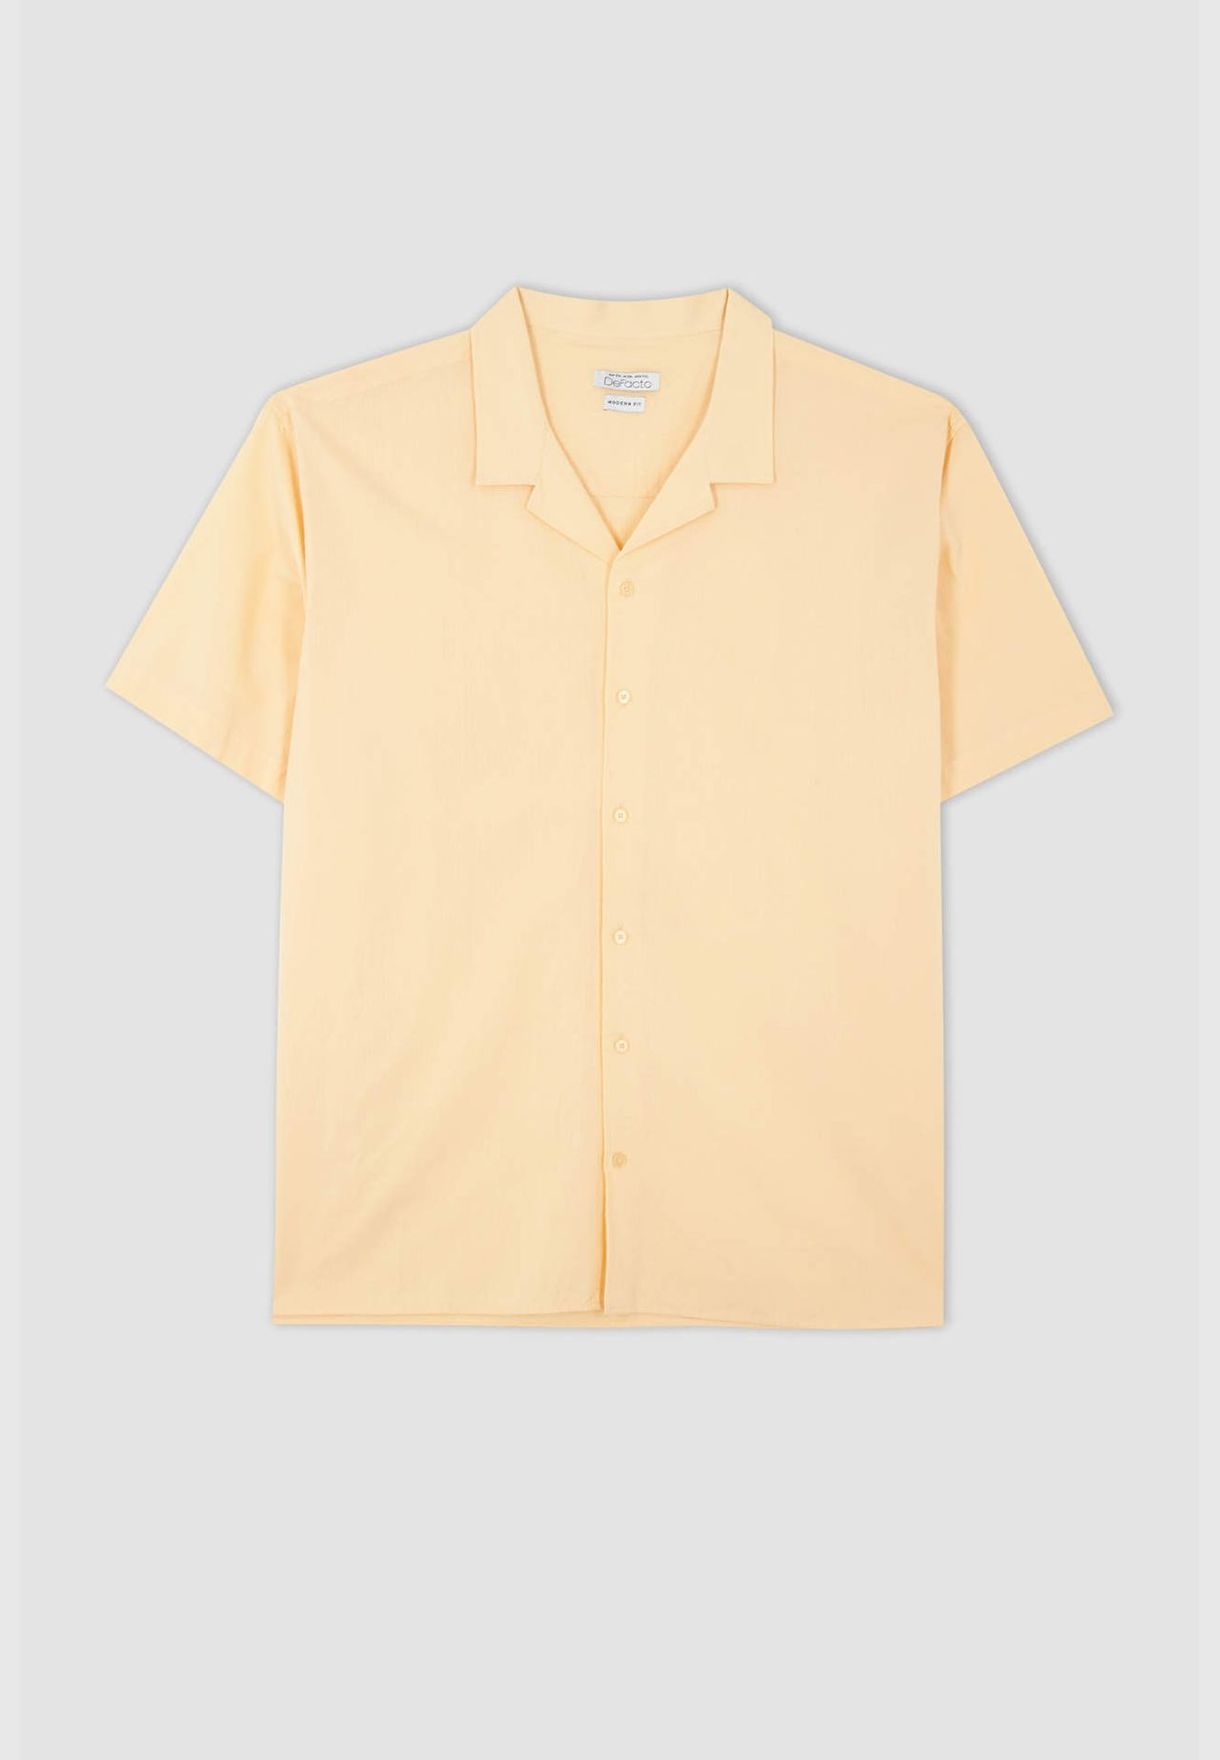 Man Plussize Fit Resort Neck Woven Top Short Sleeve Shirt